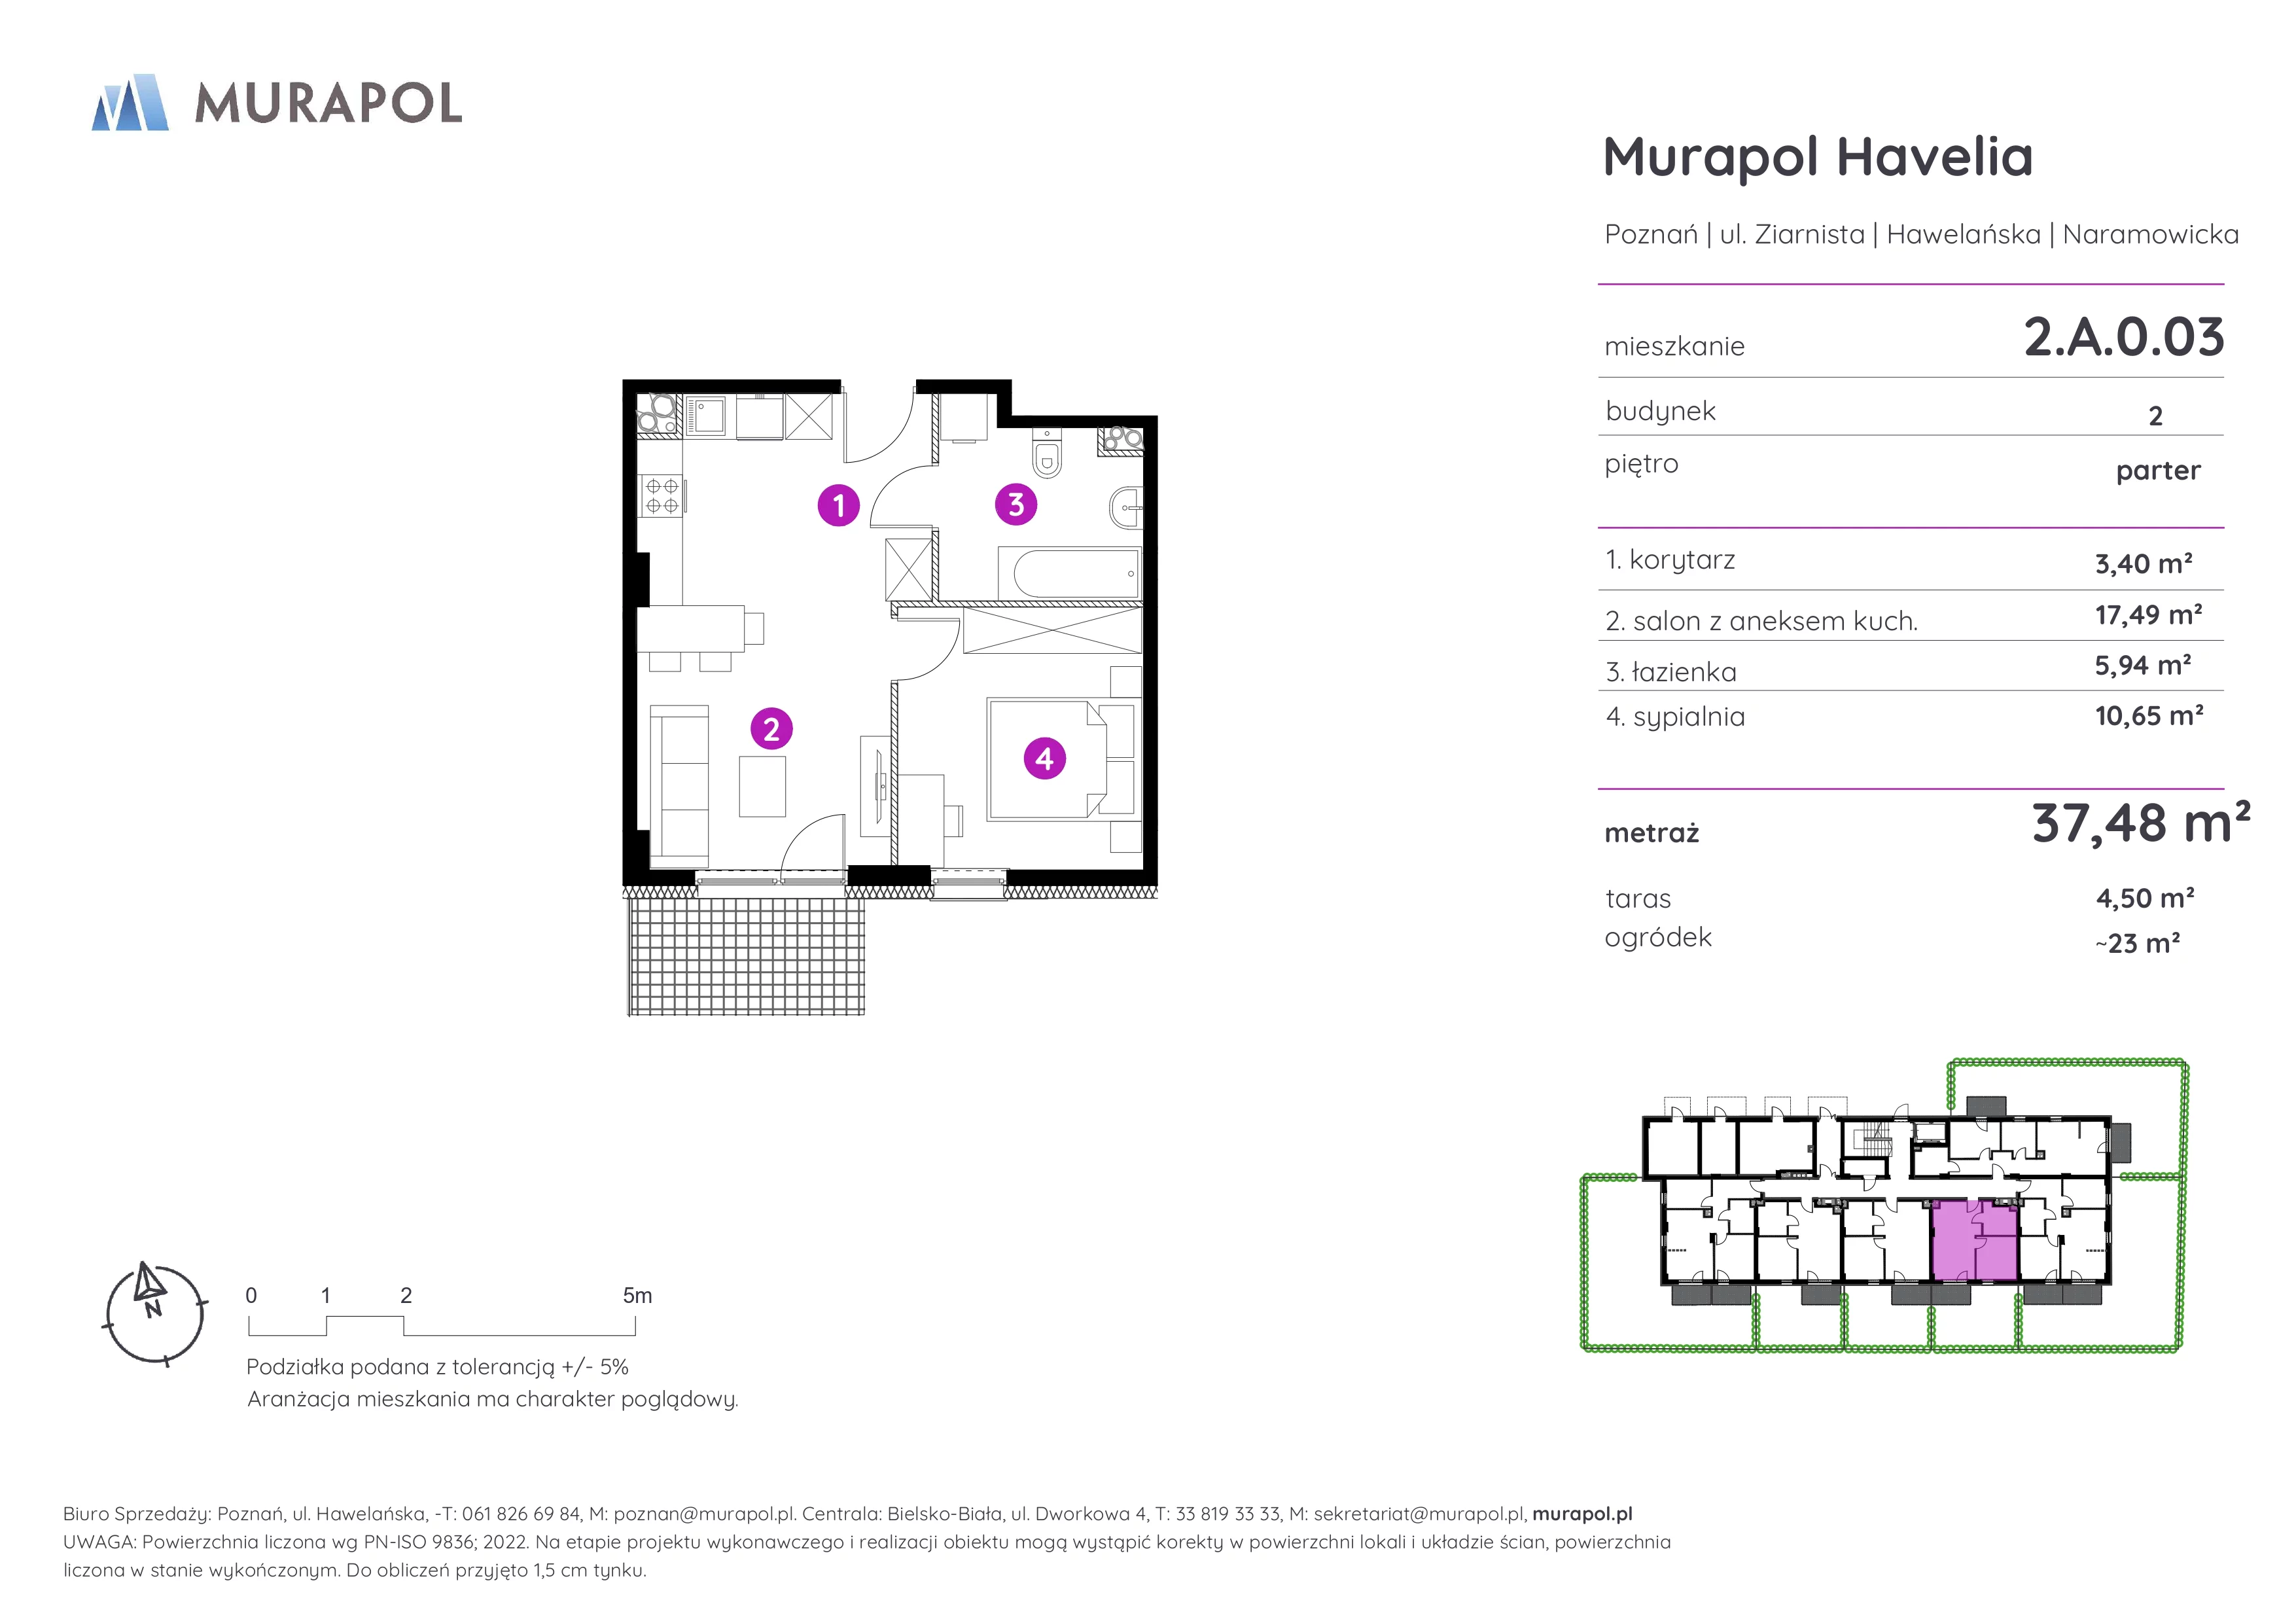 Mieszkanie 37,48 m², parter, oferta nr 2.A.0.03, Murapol Havelia, Poznań, Winogrady, Stare Winogrady, ul. Ziarnista / Naramowicka